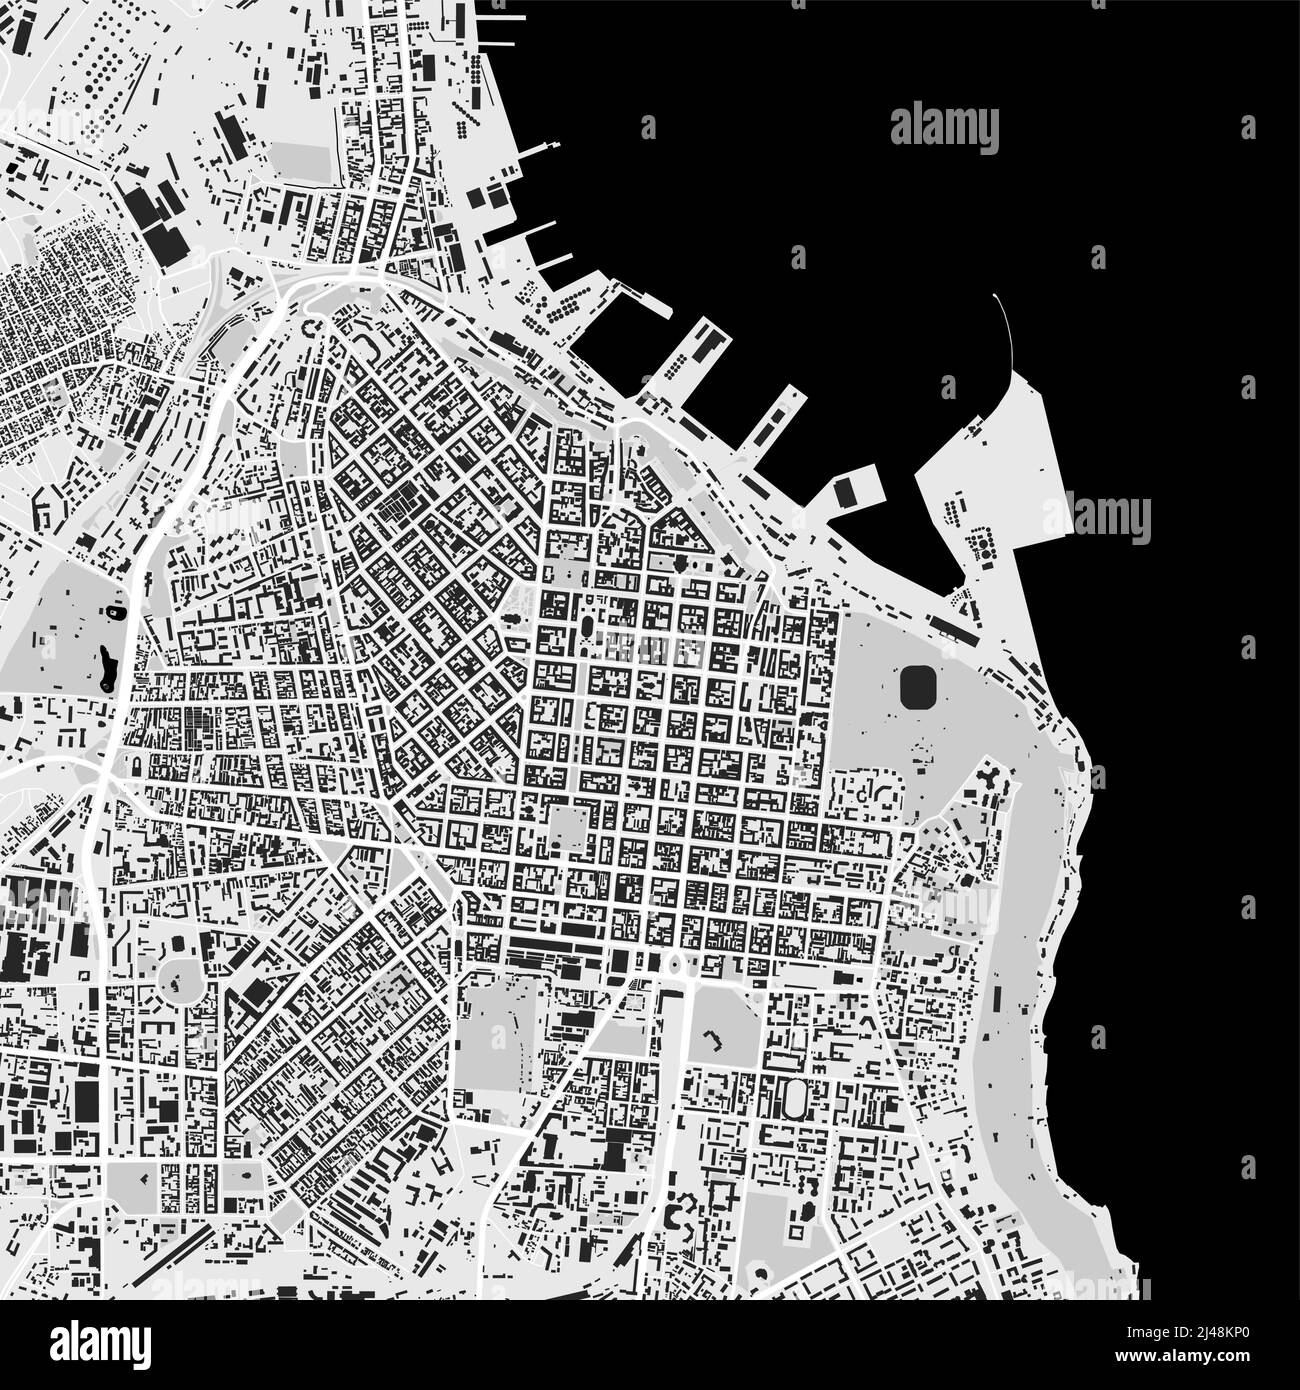 Stadtbild-Vektorkarte von Odesa. Vektor-Illustration, Odessa Karte Graustufen schwarz-weiß Kunst Poster. Road-Map-Bild mit Metropolregion Ansicht. Stock Vektor